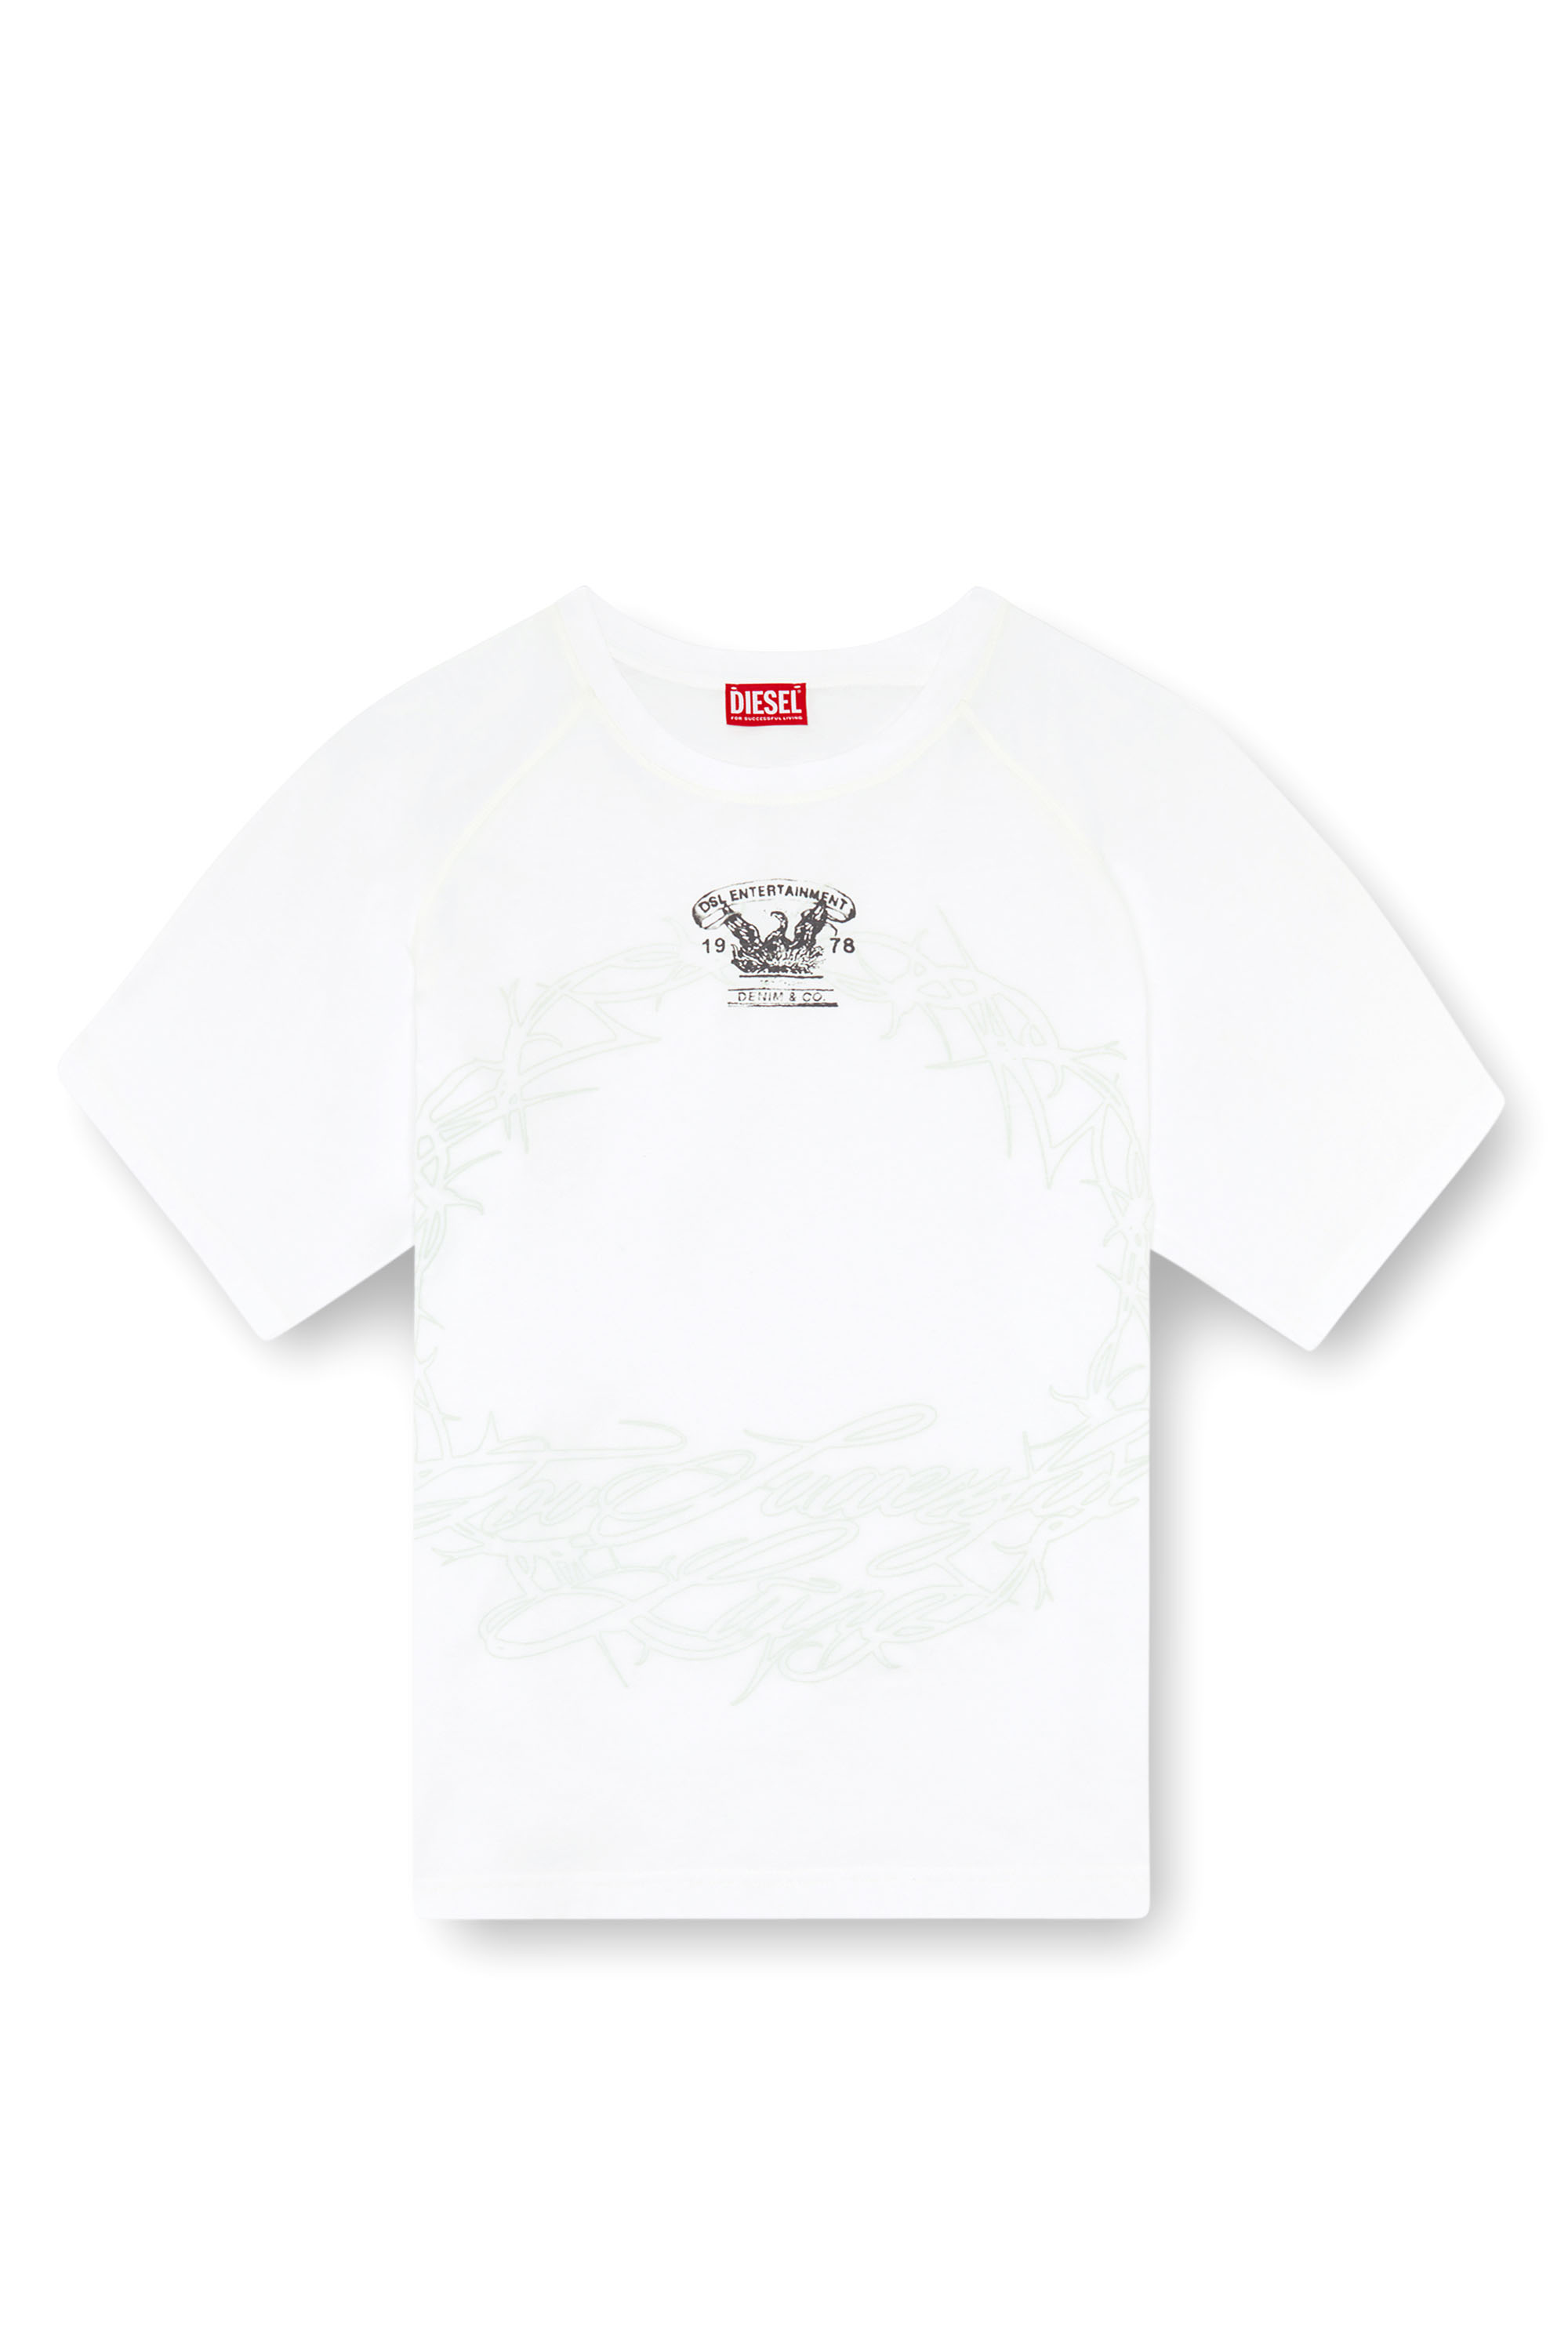 Diesel - T-ROXT-Q1, Hombre Camiseta con estampado de revés in Blanco - Image 3